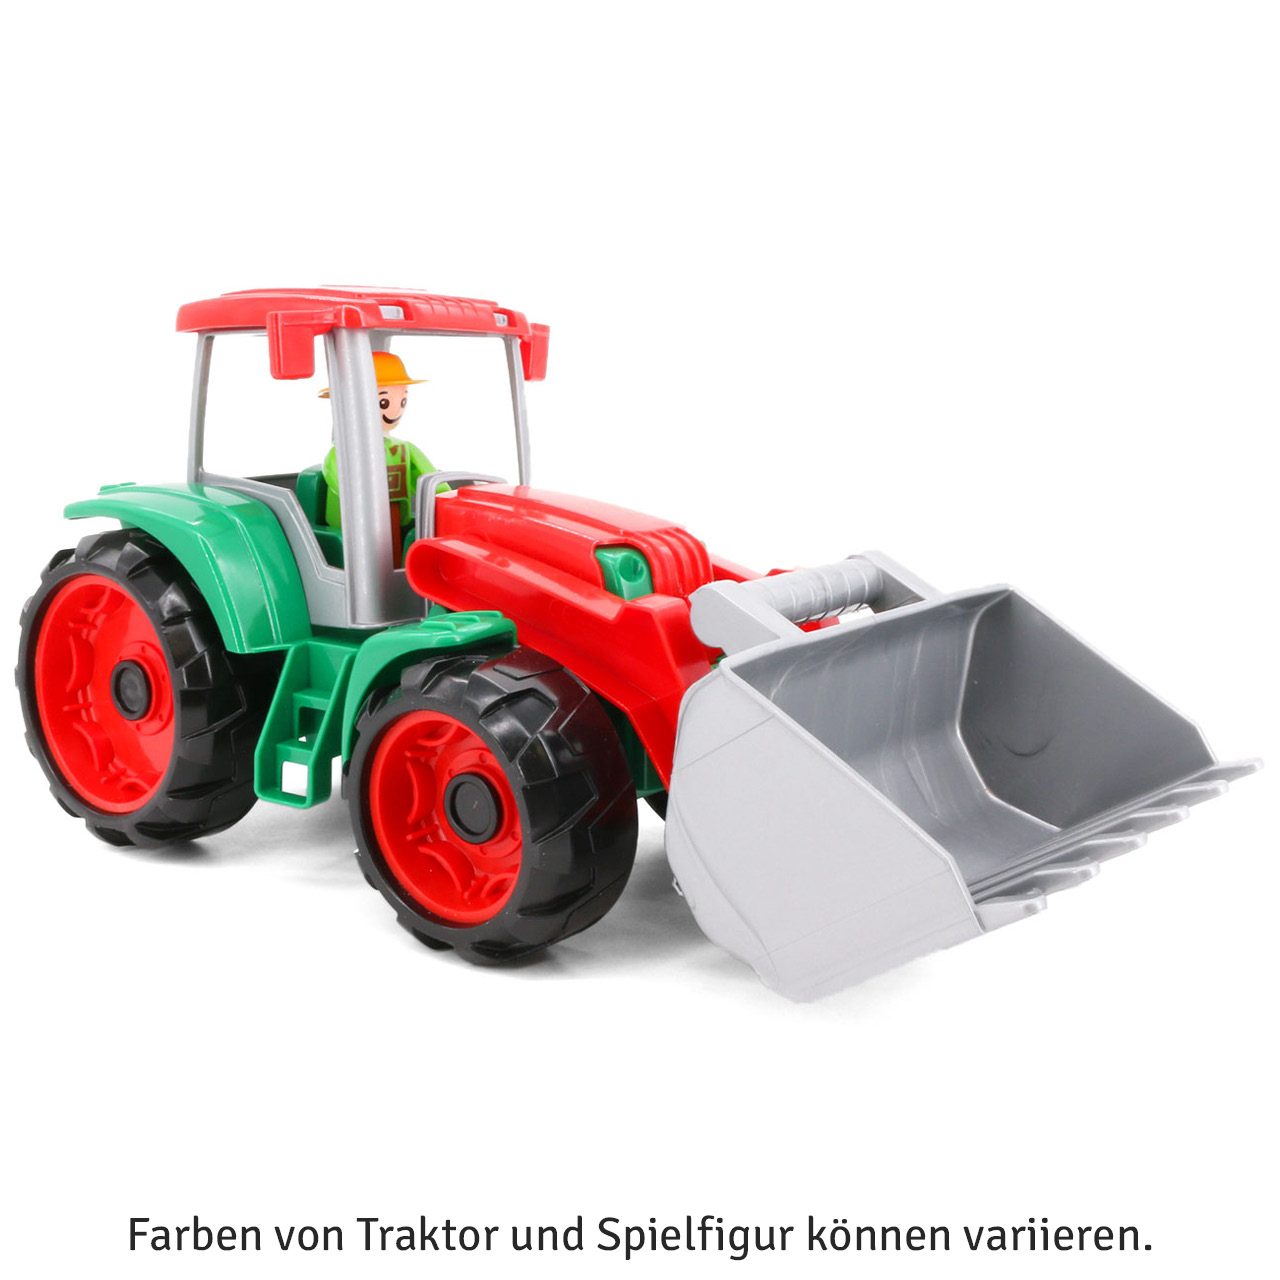 Grüner Traktor - Führerhaus zum Öffnen & Bespielen